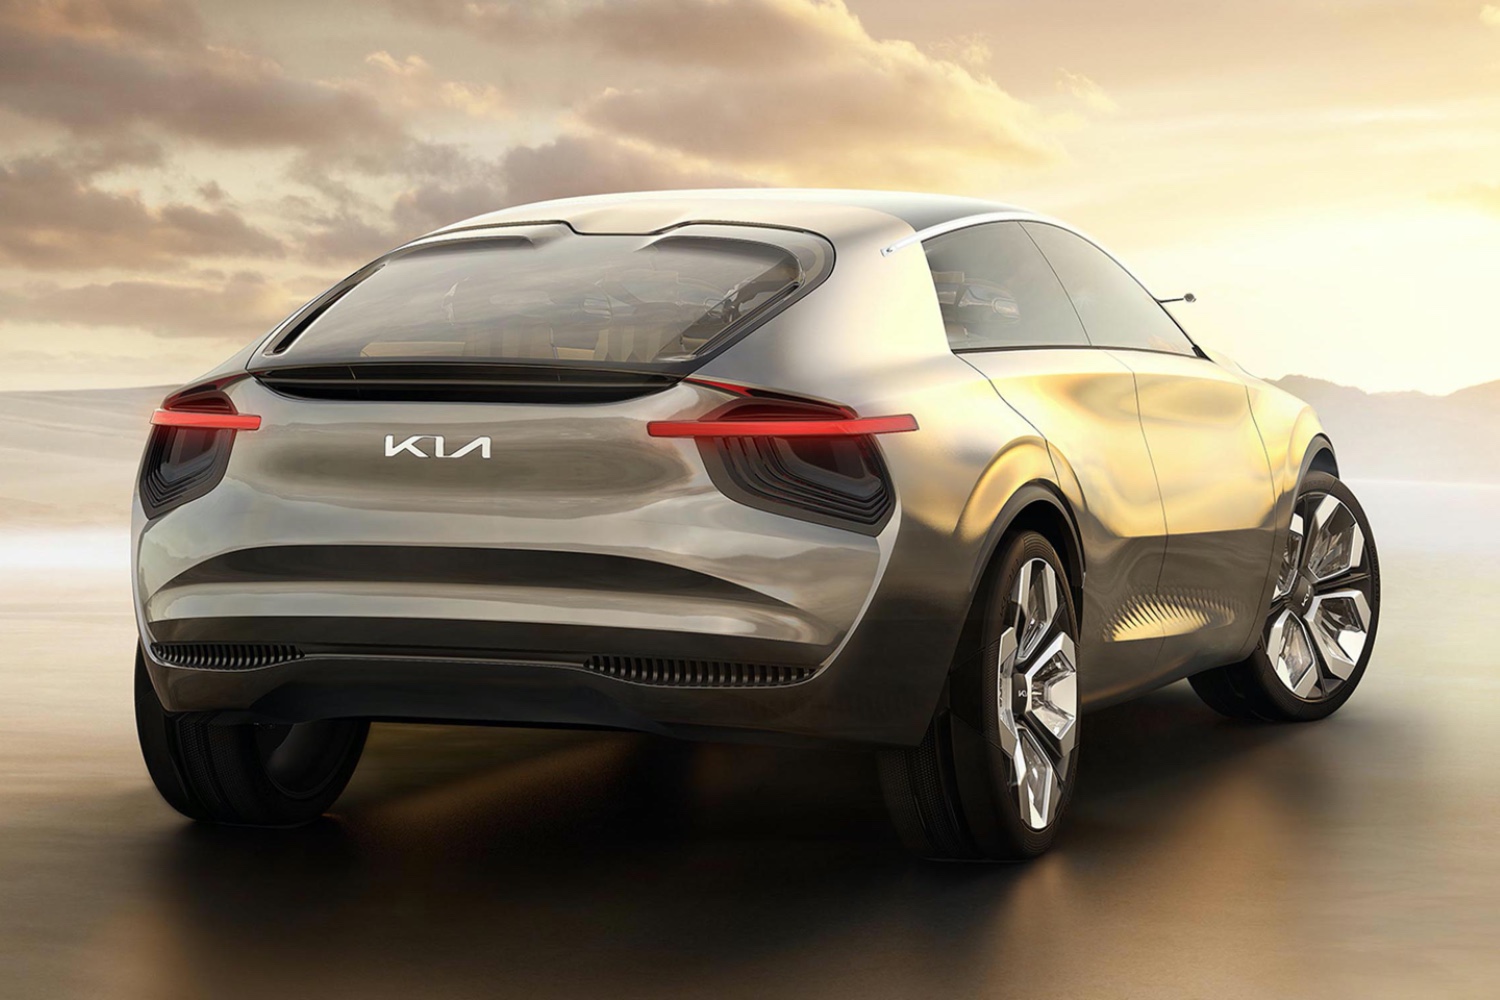 Este concept, com o nome de "Imagine by Kia concept car", foi apresentado no Salão de Genebra de 2019